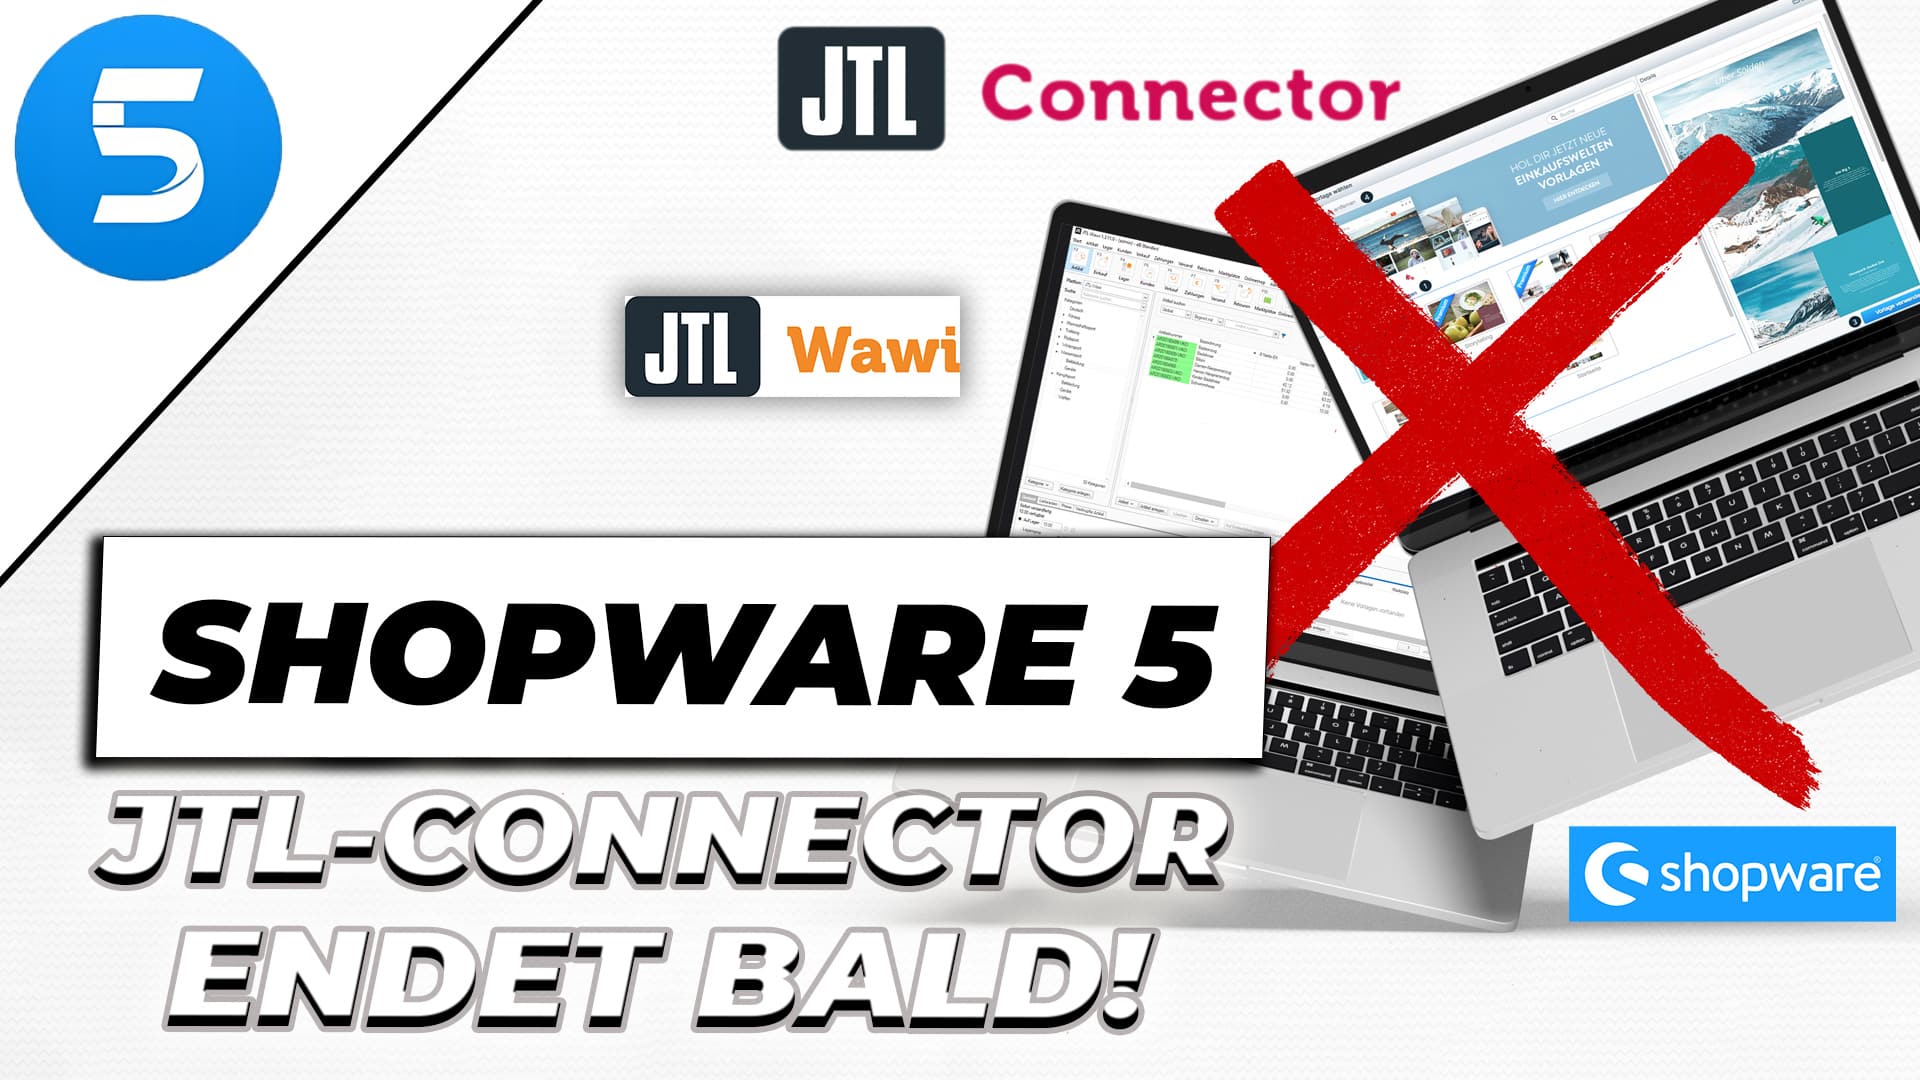 Shopware 5 JTL-Connector endet bald – Was nun?